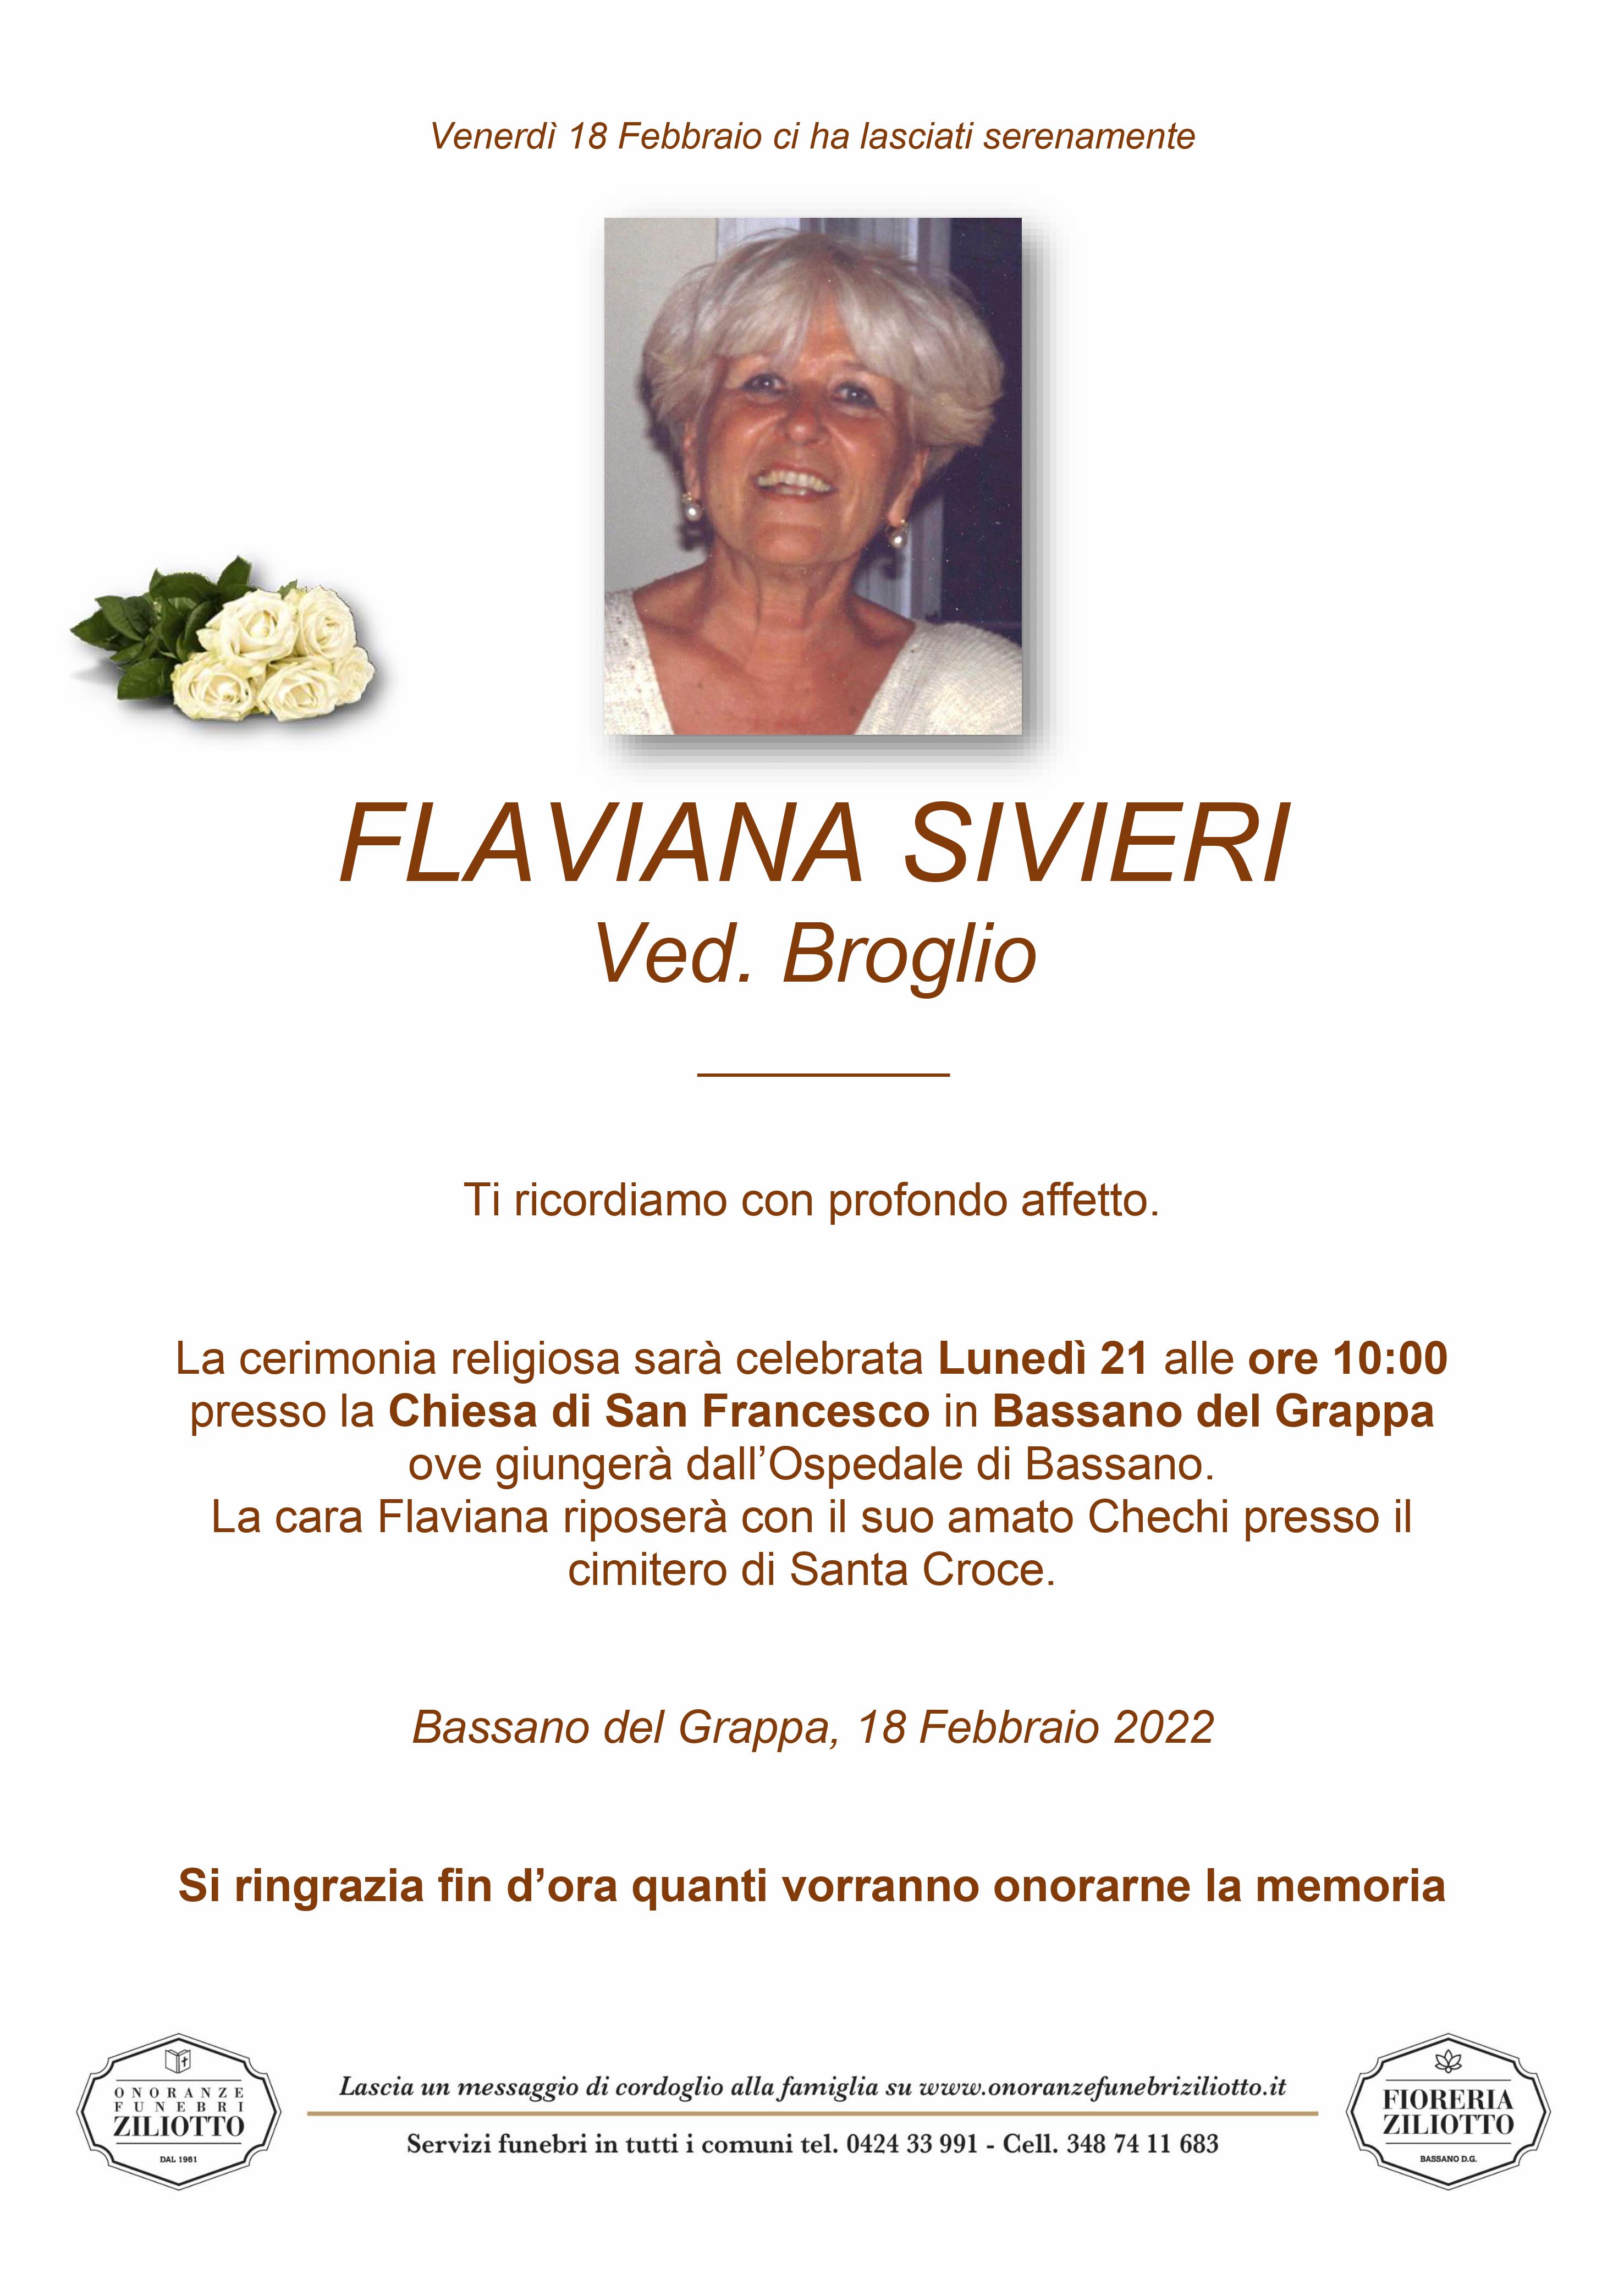 Flaviana Sivieri - 0 anni - Bassano del Grappa